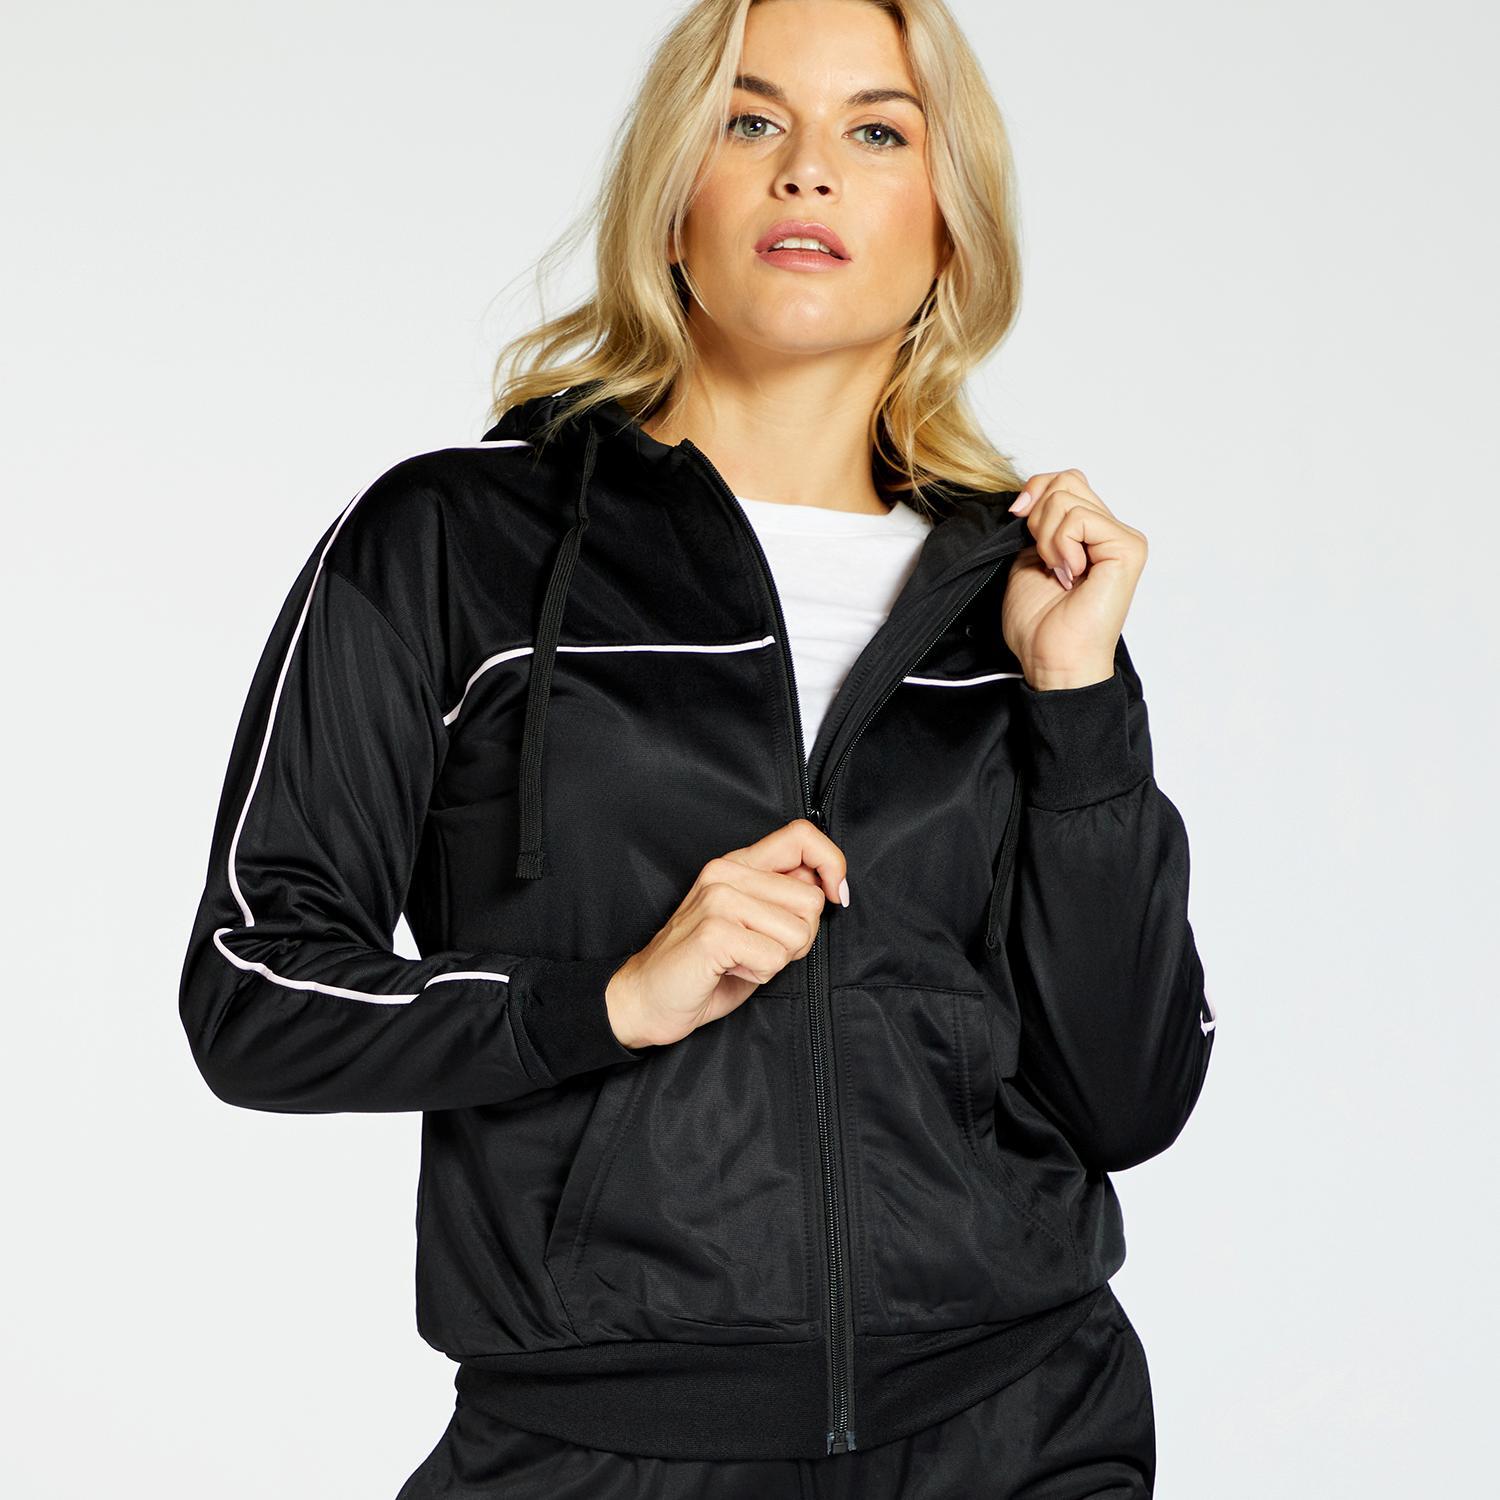 Up Basic - Noir - Survêtement Femme sports taille XL